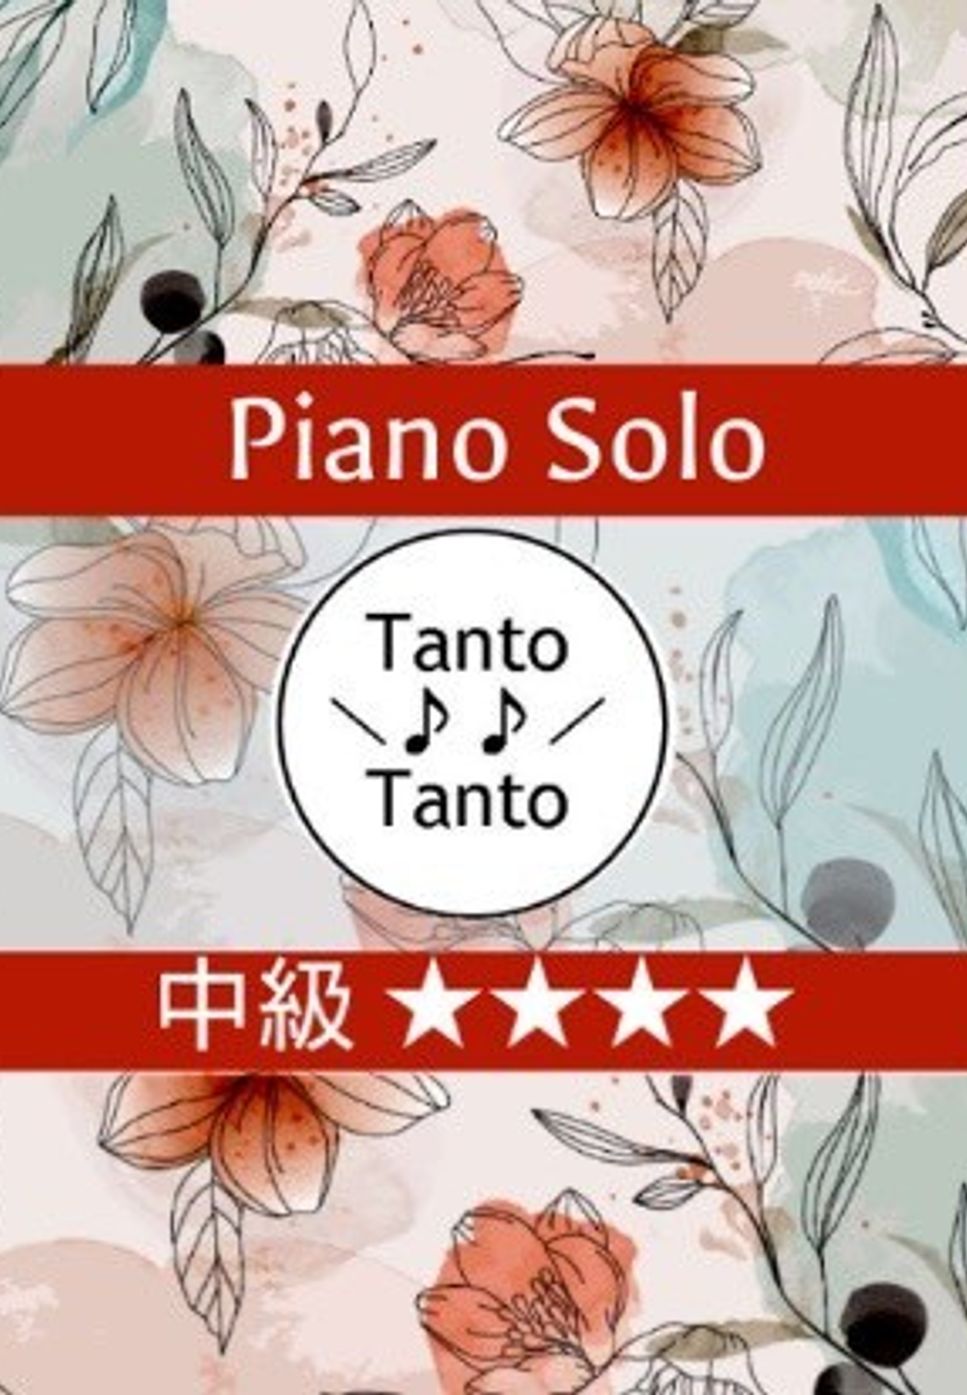 ロバート バーナード シャーマン　リチャード モートン シャーマン - 小さな世界 (It’s a Small World 世界一周の旅 Piano Solo in C) by Tanto Tanto